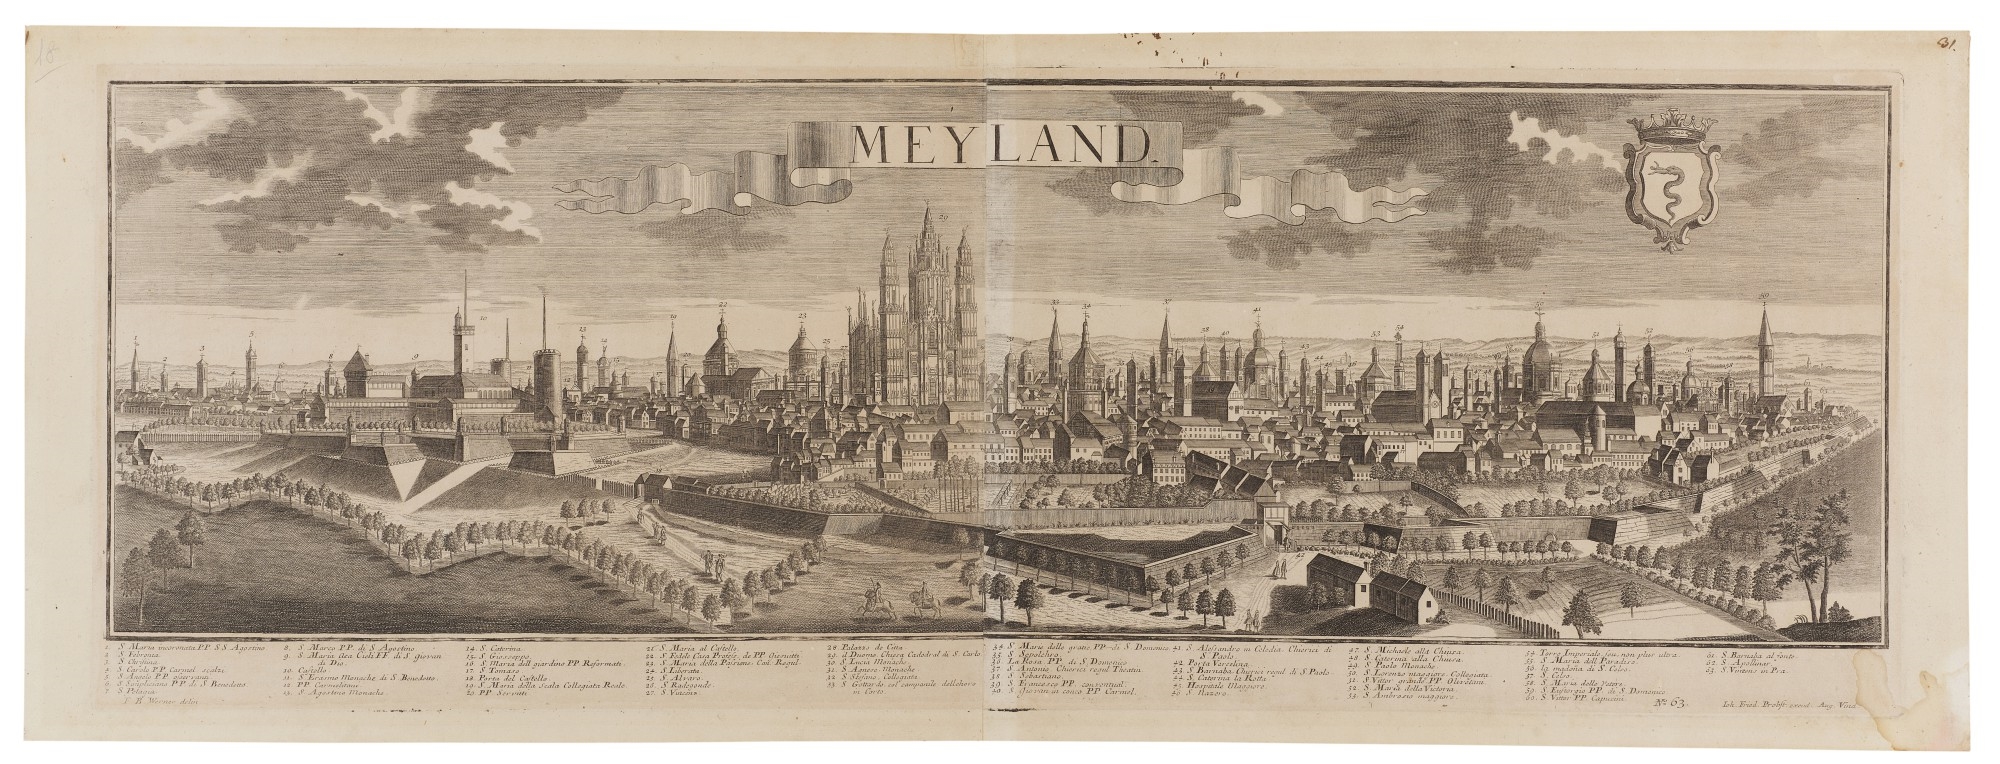 Meyland.  Augsburg, [second half 18th century] - Johann Friedrich Probst